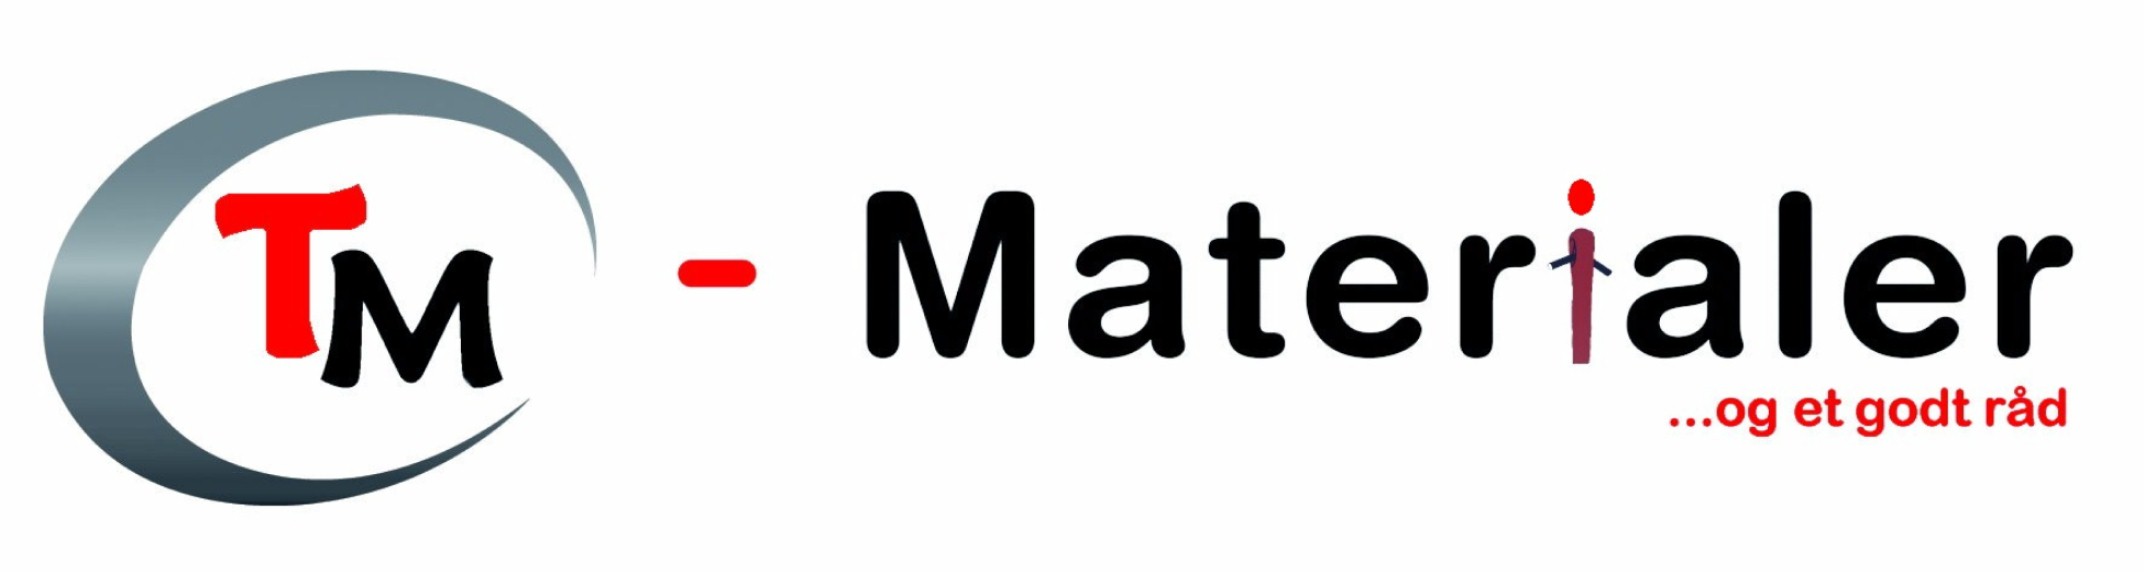 TM-Materialer ApS